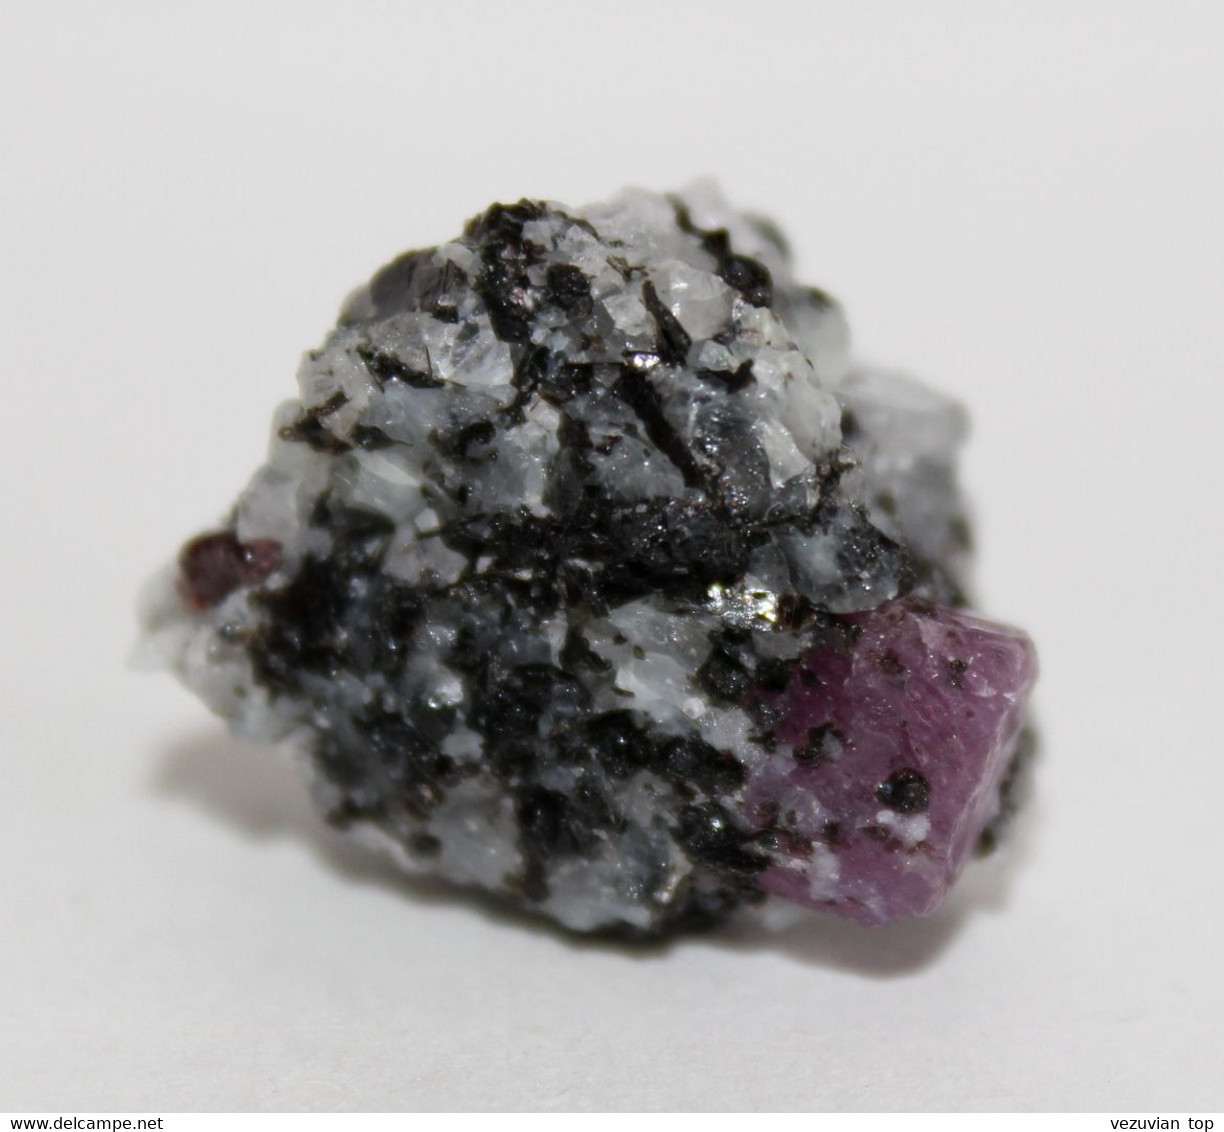 Red Corundum сrystal in garnet-plagioclase-biotite-gneiss